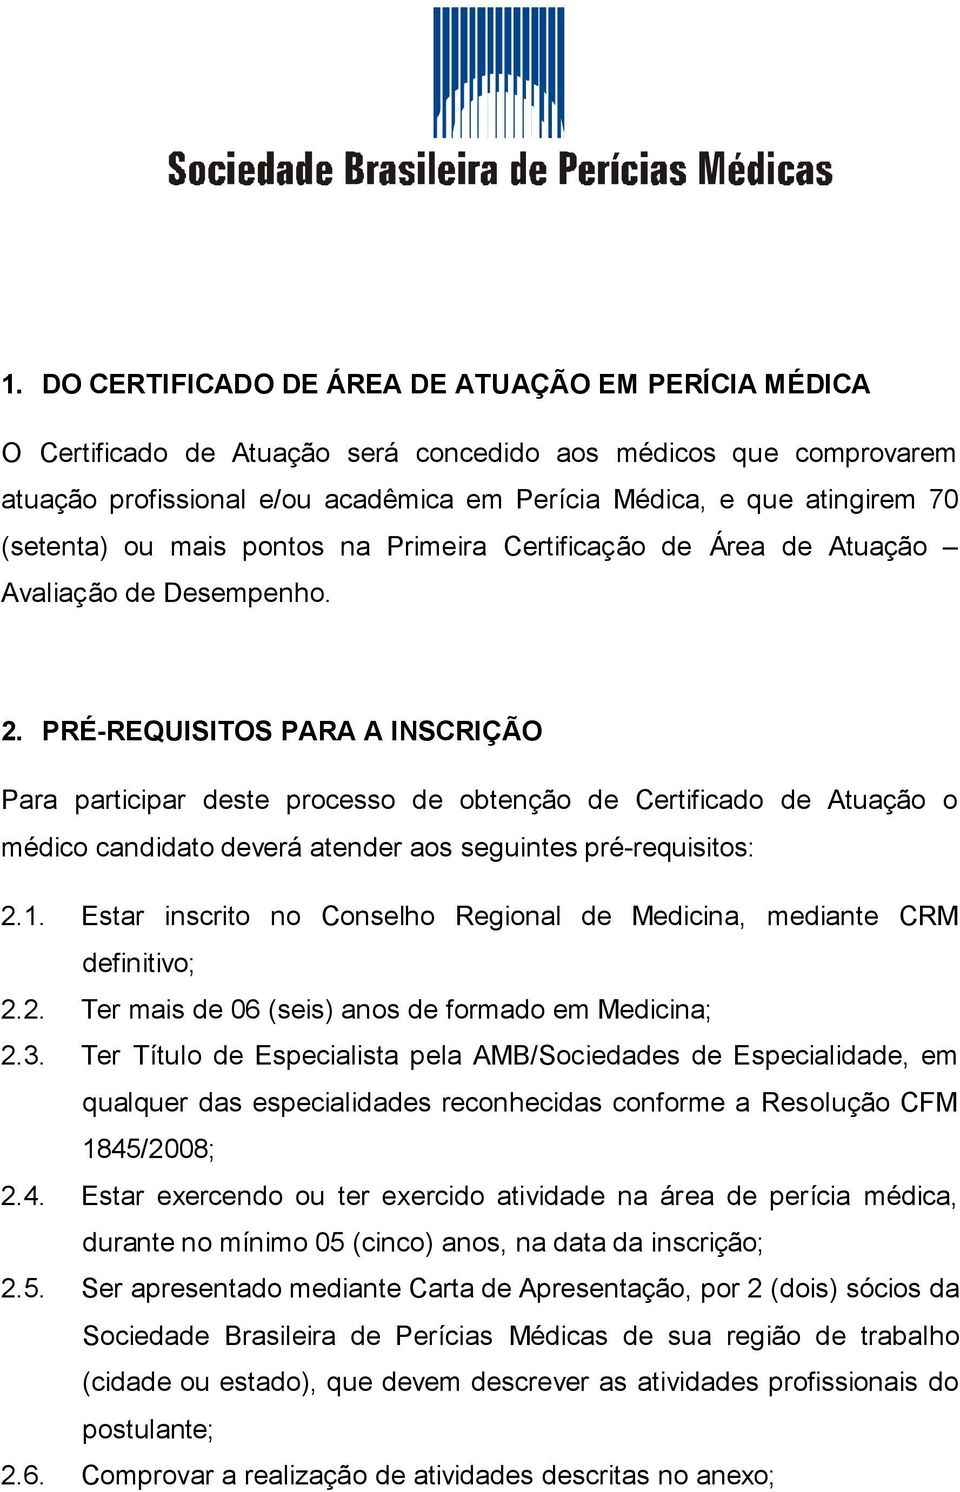 PRÉ-REQUISITOS PARA A INSCRIÇÃO Para participar deste processo de obtenção de Certificado de Atuação o médico candidato deverá atender aos seguintes pré-requisitos: 2.1.